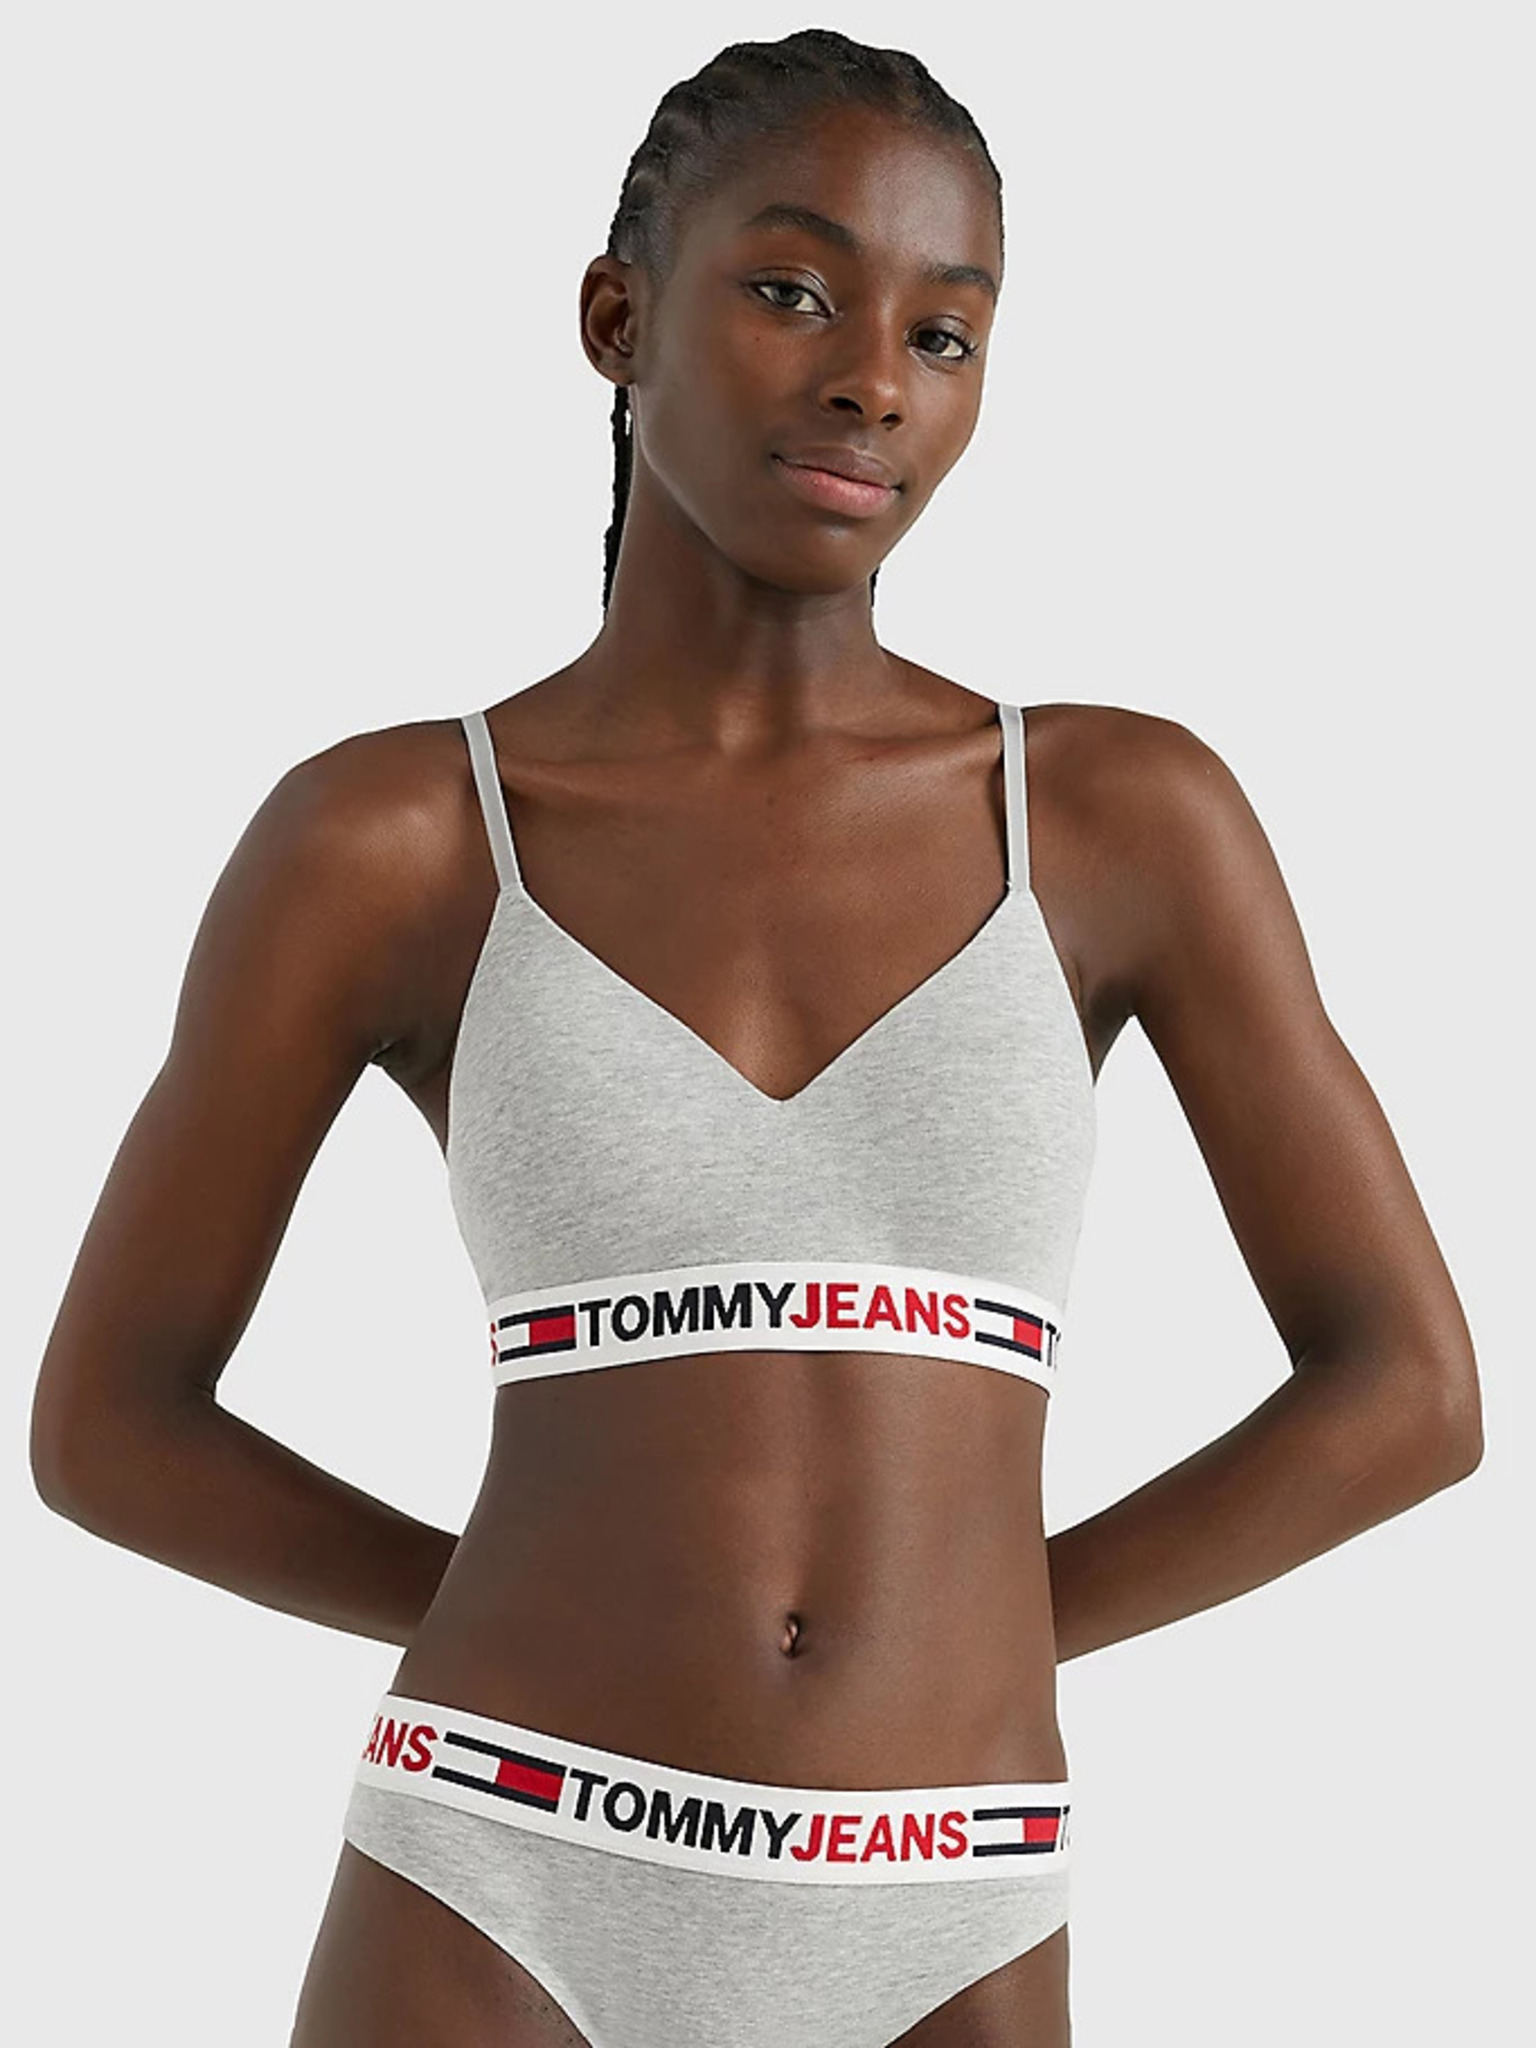 Tommy Jeans Women's Retro Low Fancy Trainers - Black